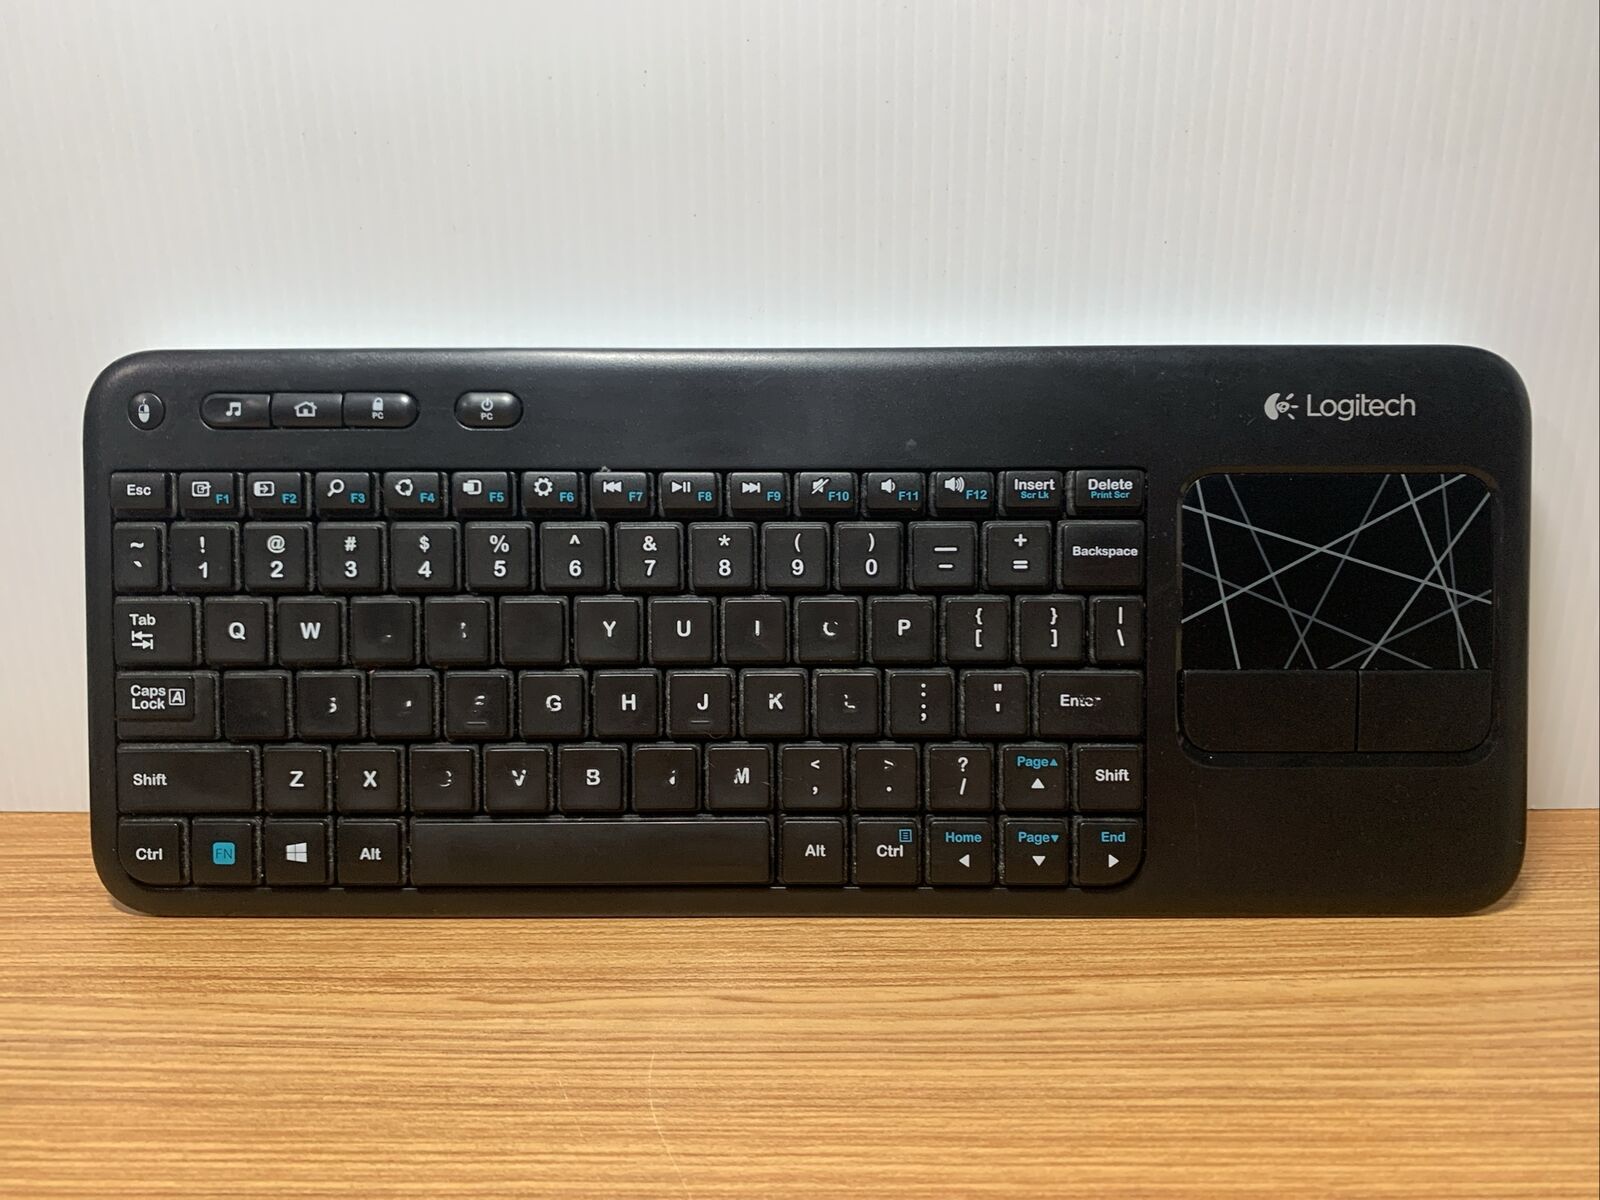 Logitech K400r Wireless Slim Keyboard w/3.5